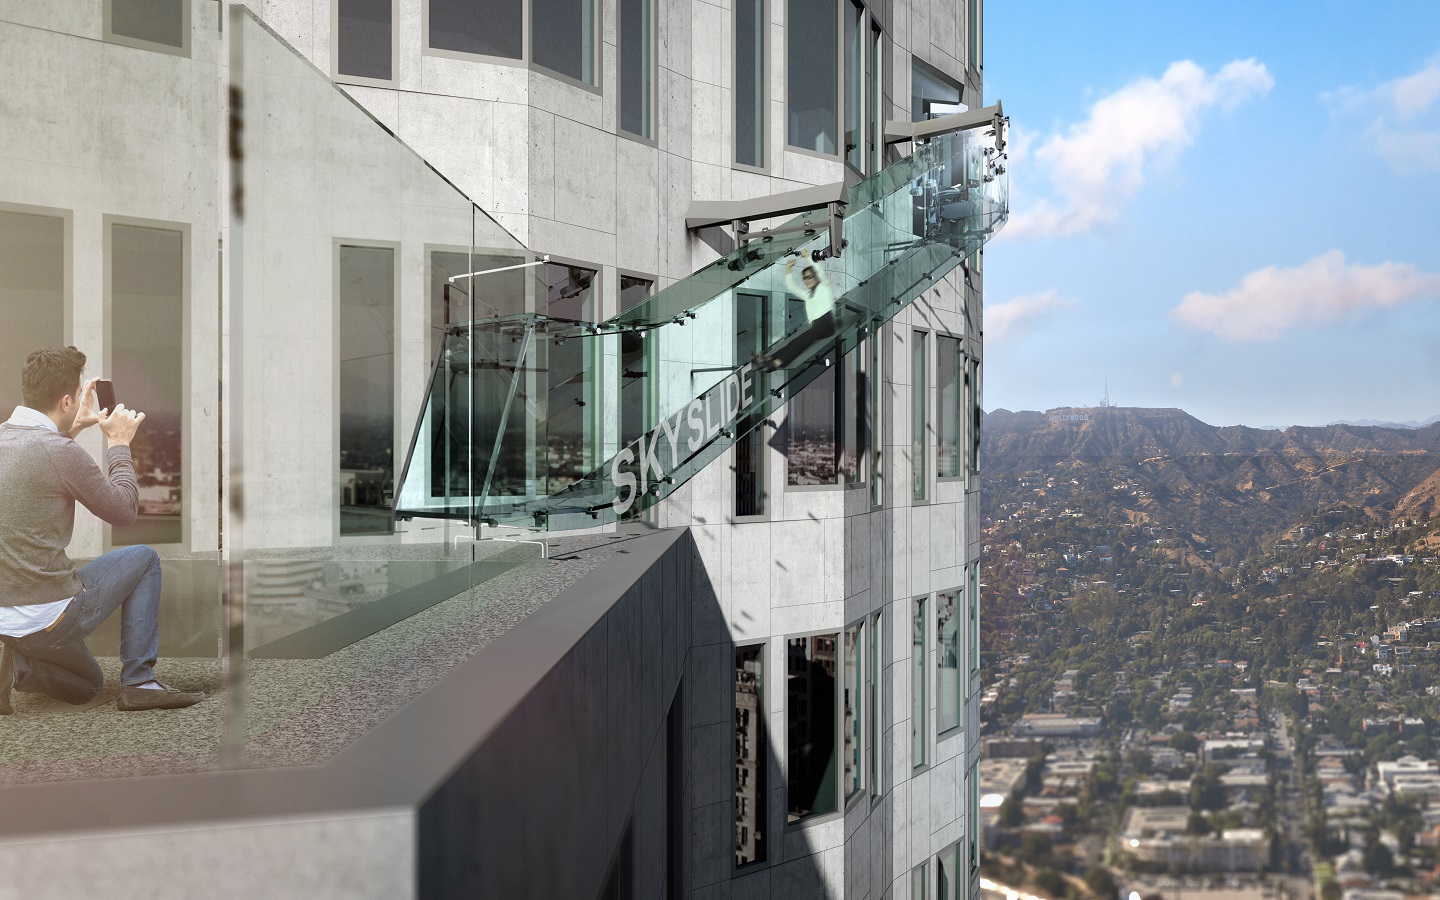  Skyslide, el tobogán transparente a más de 250 metros de altura está en Los Ángeles